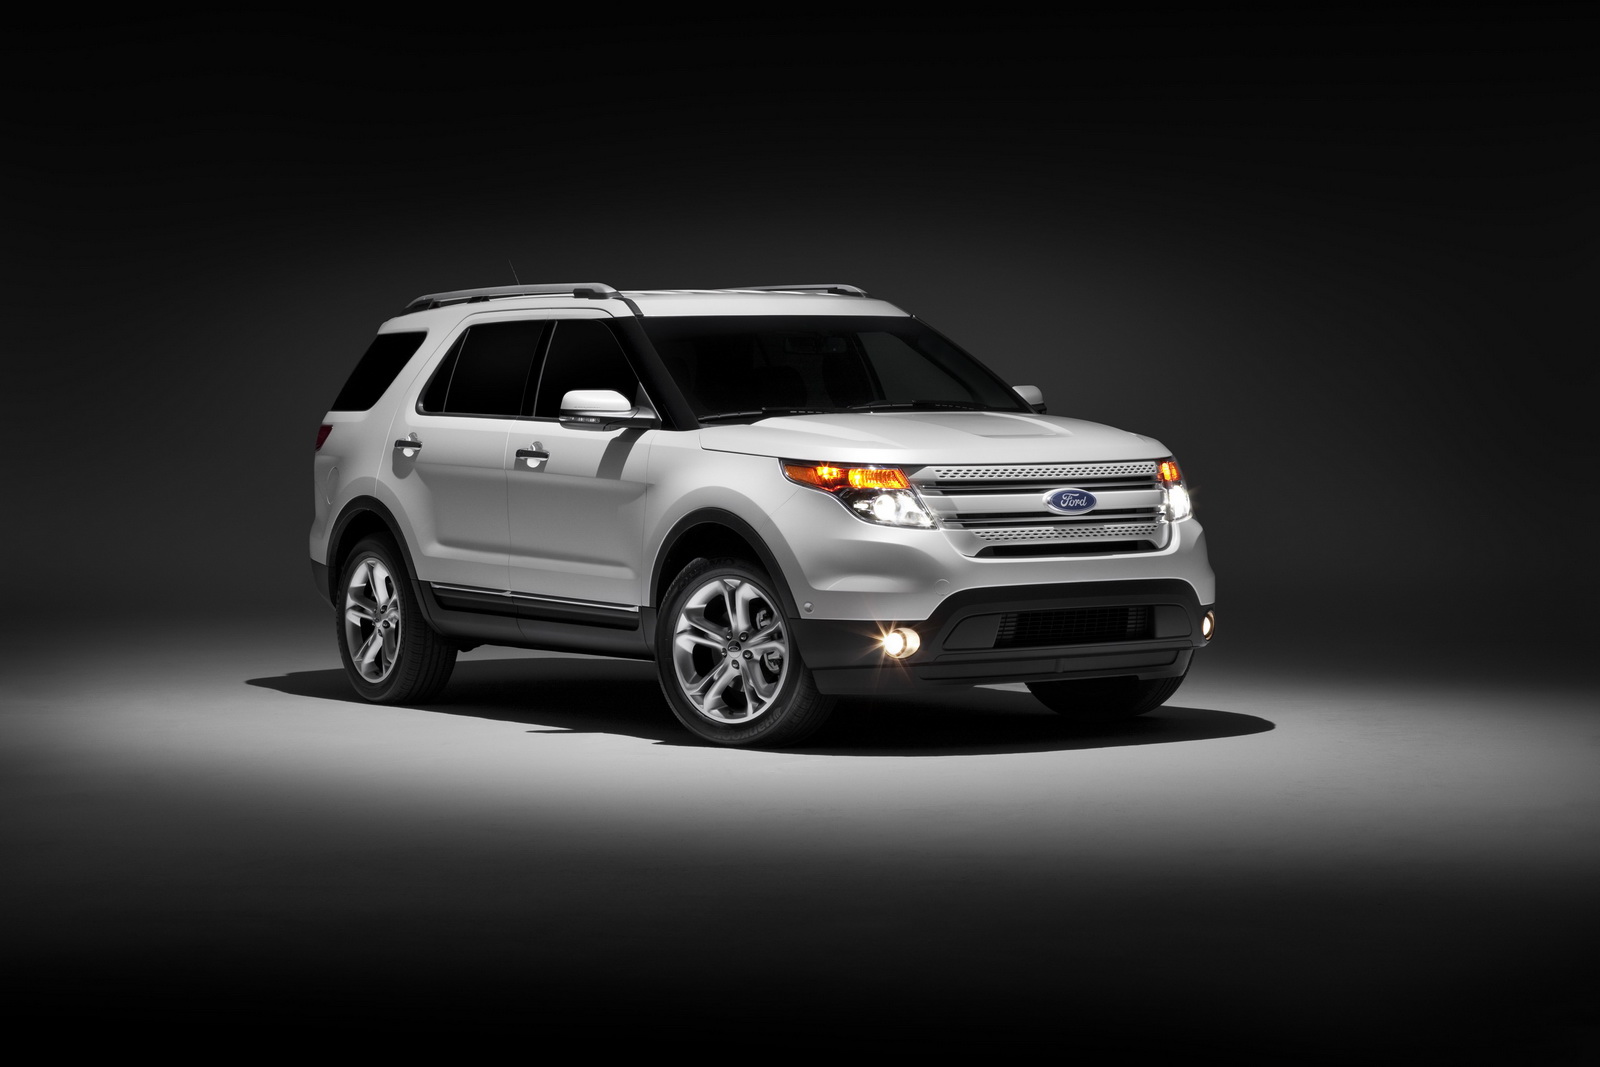 2012 Ford explorer sales figures